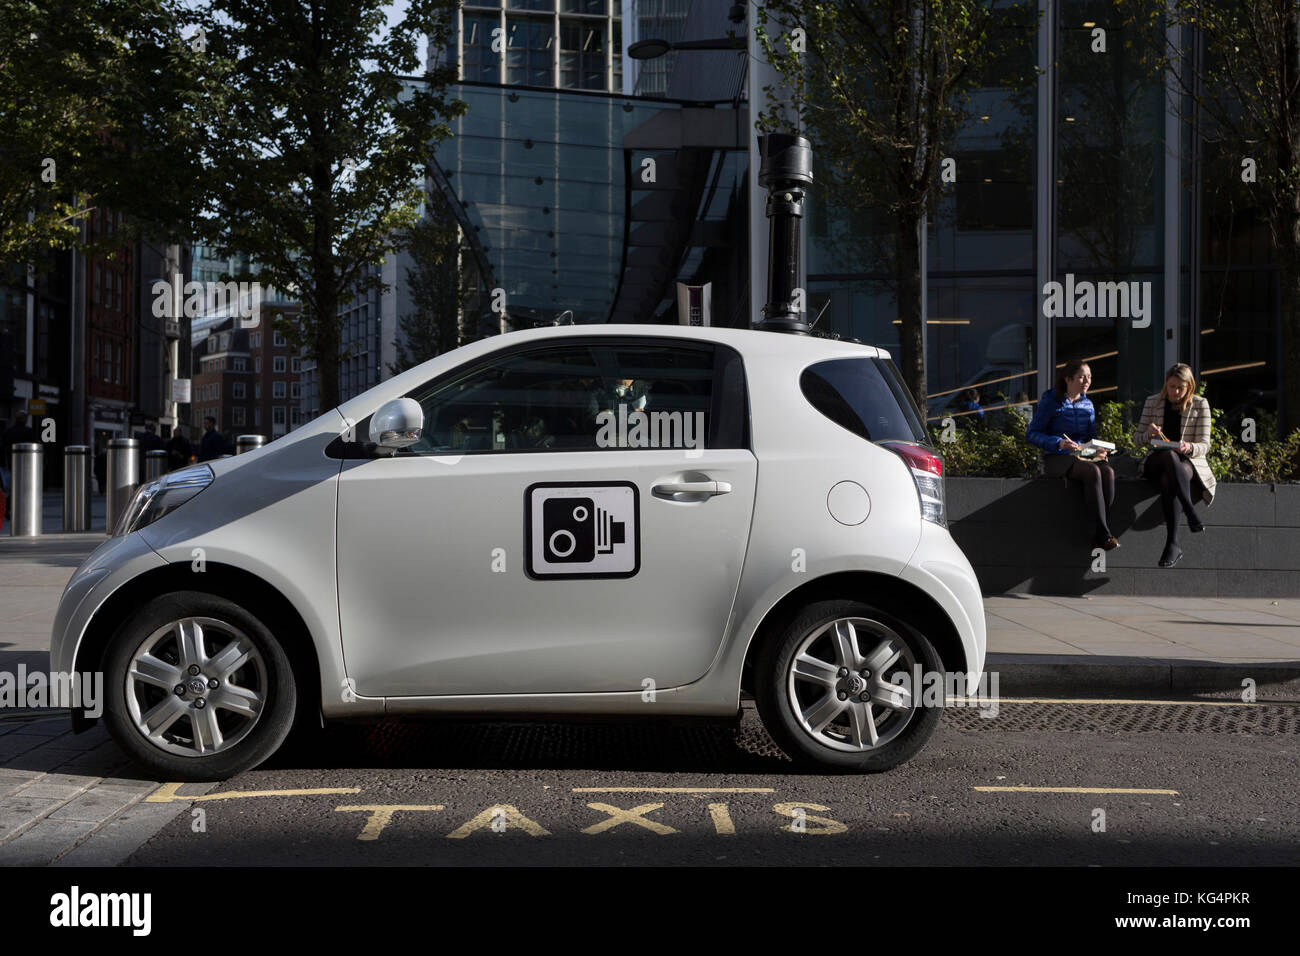 Eine Corporation in London CCTV-Auto ist auf ein Taxi Raum geparkt einer Kreuzung zu überwachen, am 30. Oktober 2017, in der City von London, England. Stockfoto